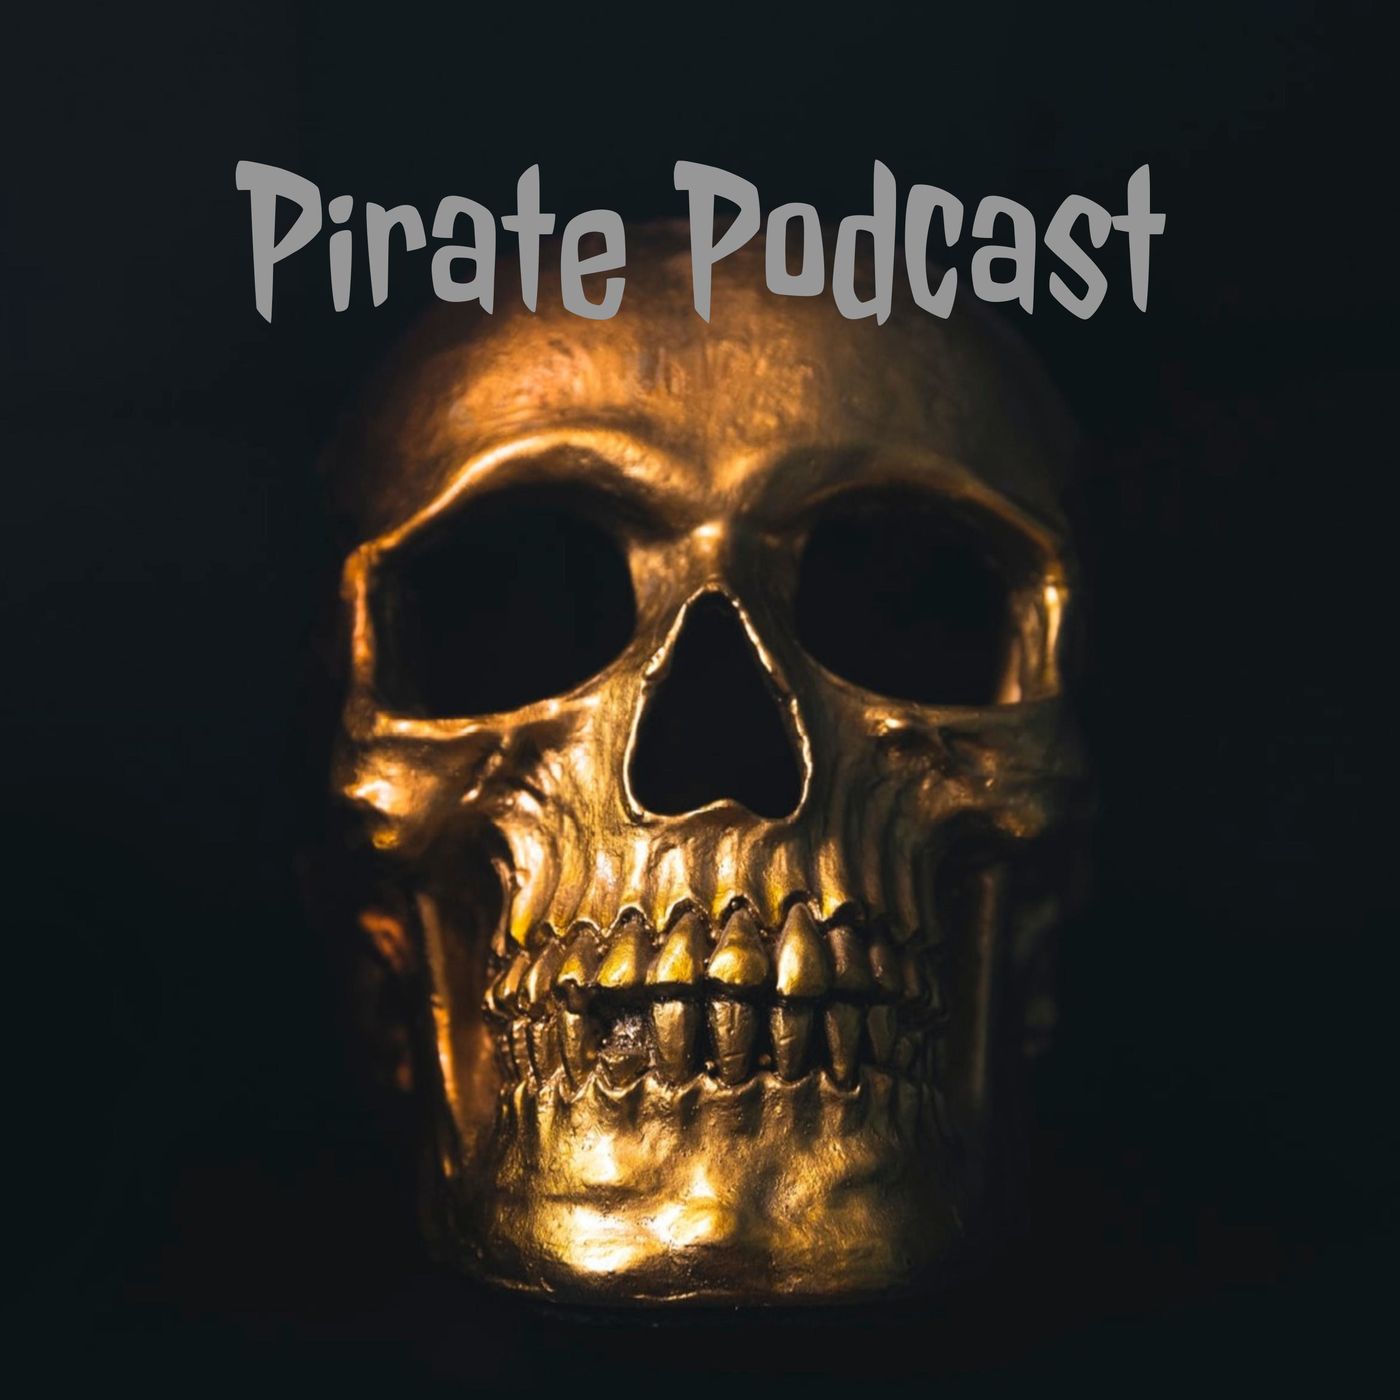 Pirate Podcast Album Art